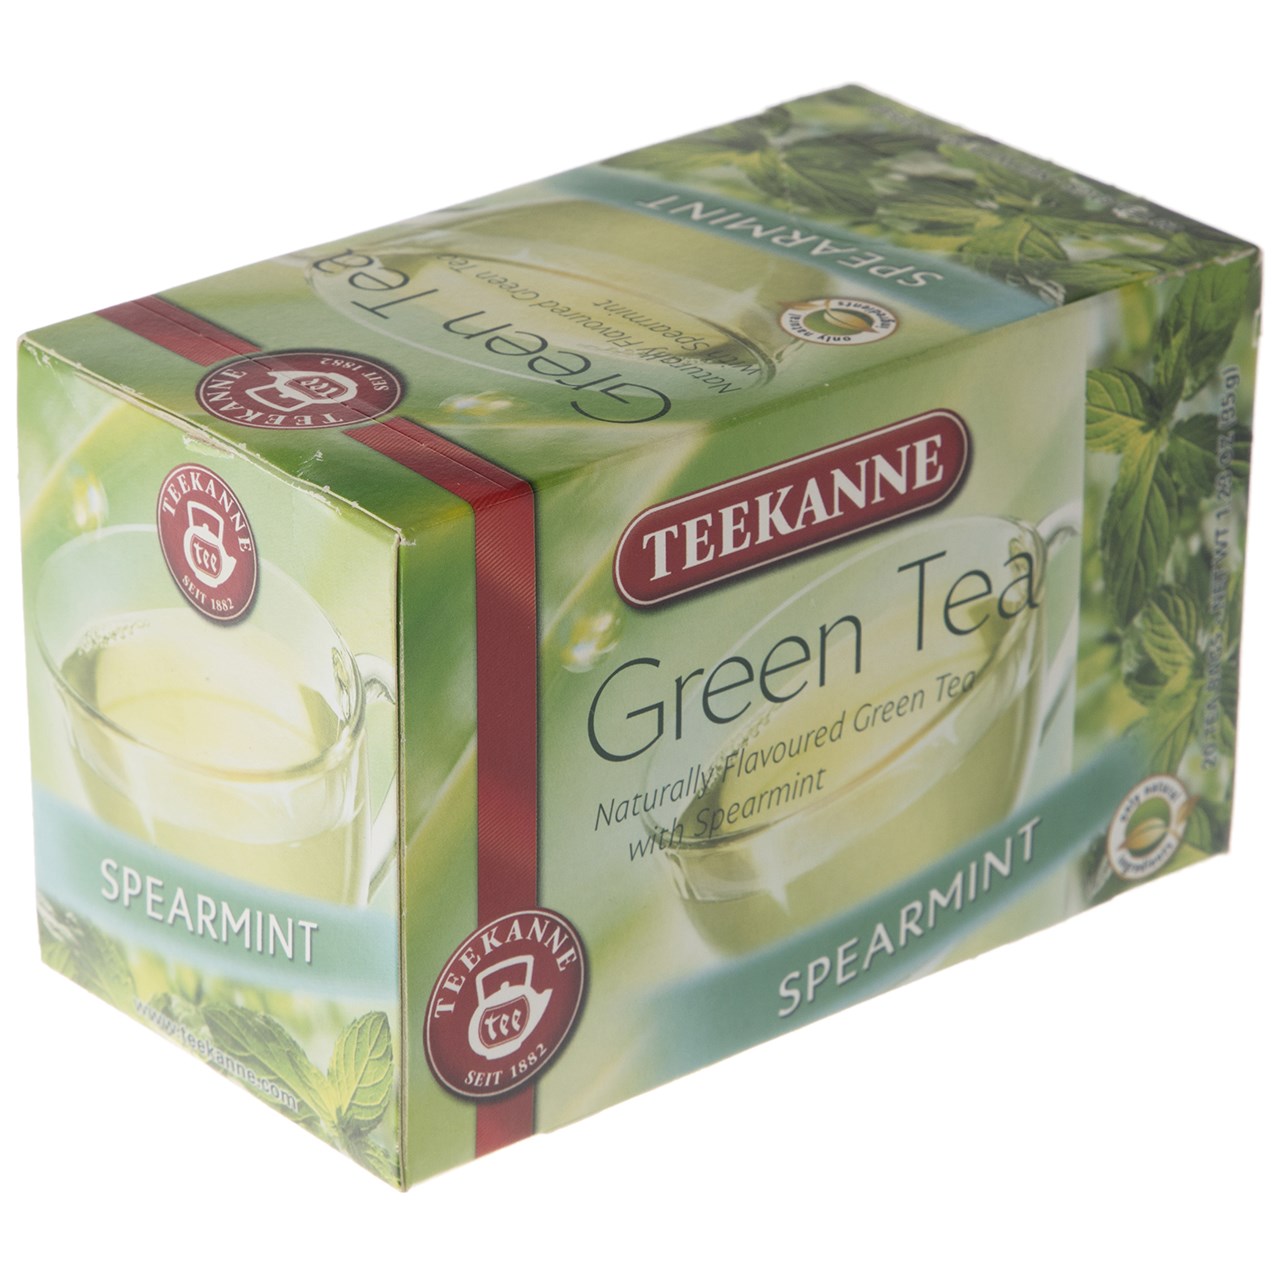 چای سبز کیسه ای تی کانه مدل Spearmint بسته 20 عددی